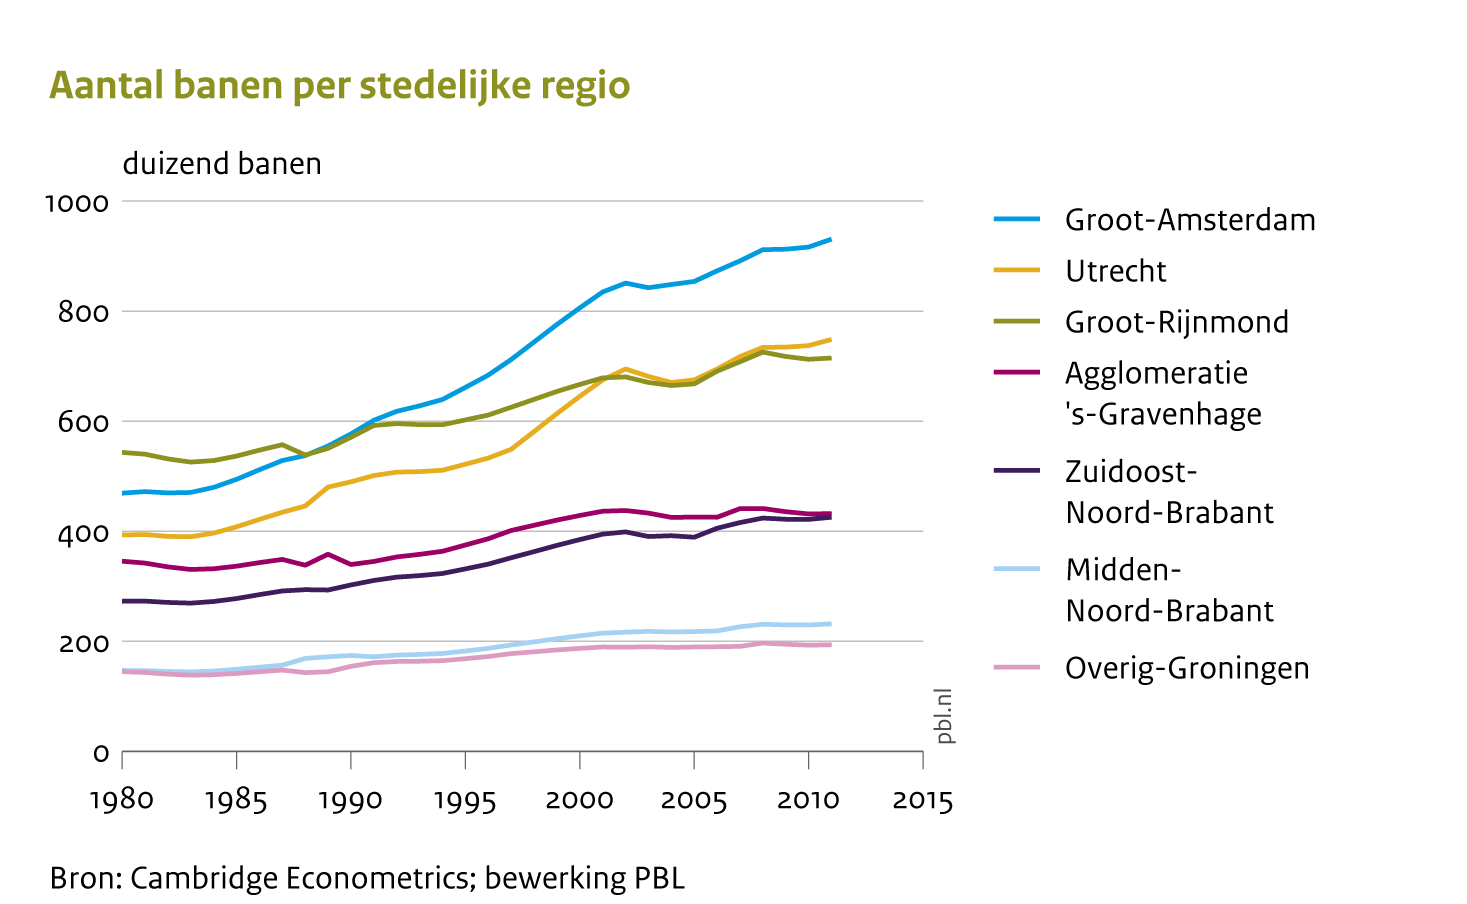 Ten opzichte van andere stedelijke regio’s heeft vooral de Noordvleugel van de Randstad (Groot Amsterdam en Utrecht) een versnelling doorgemaakt in de groei van het aantal banen.